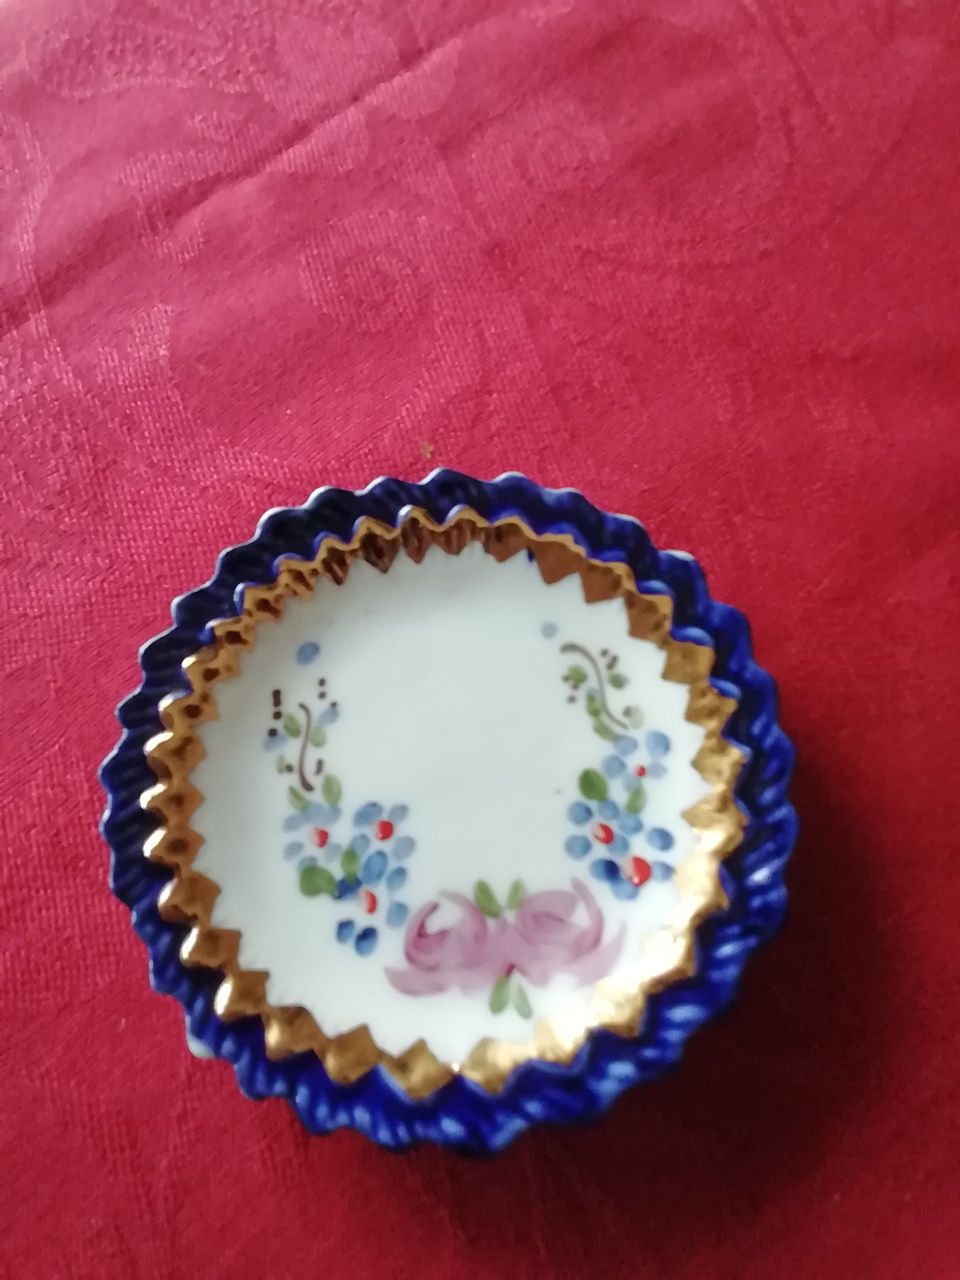 Prato miniatura porcelanas AG Aveiro